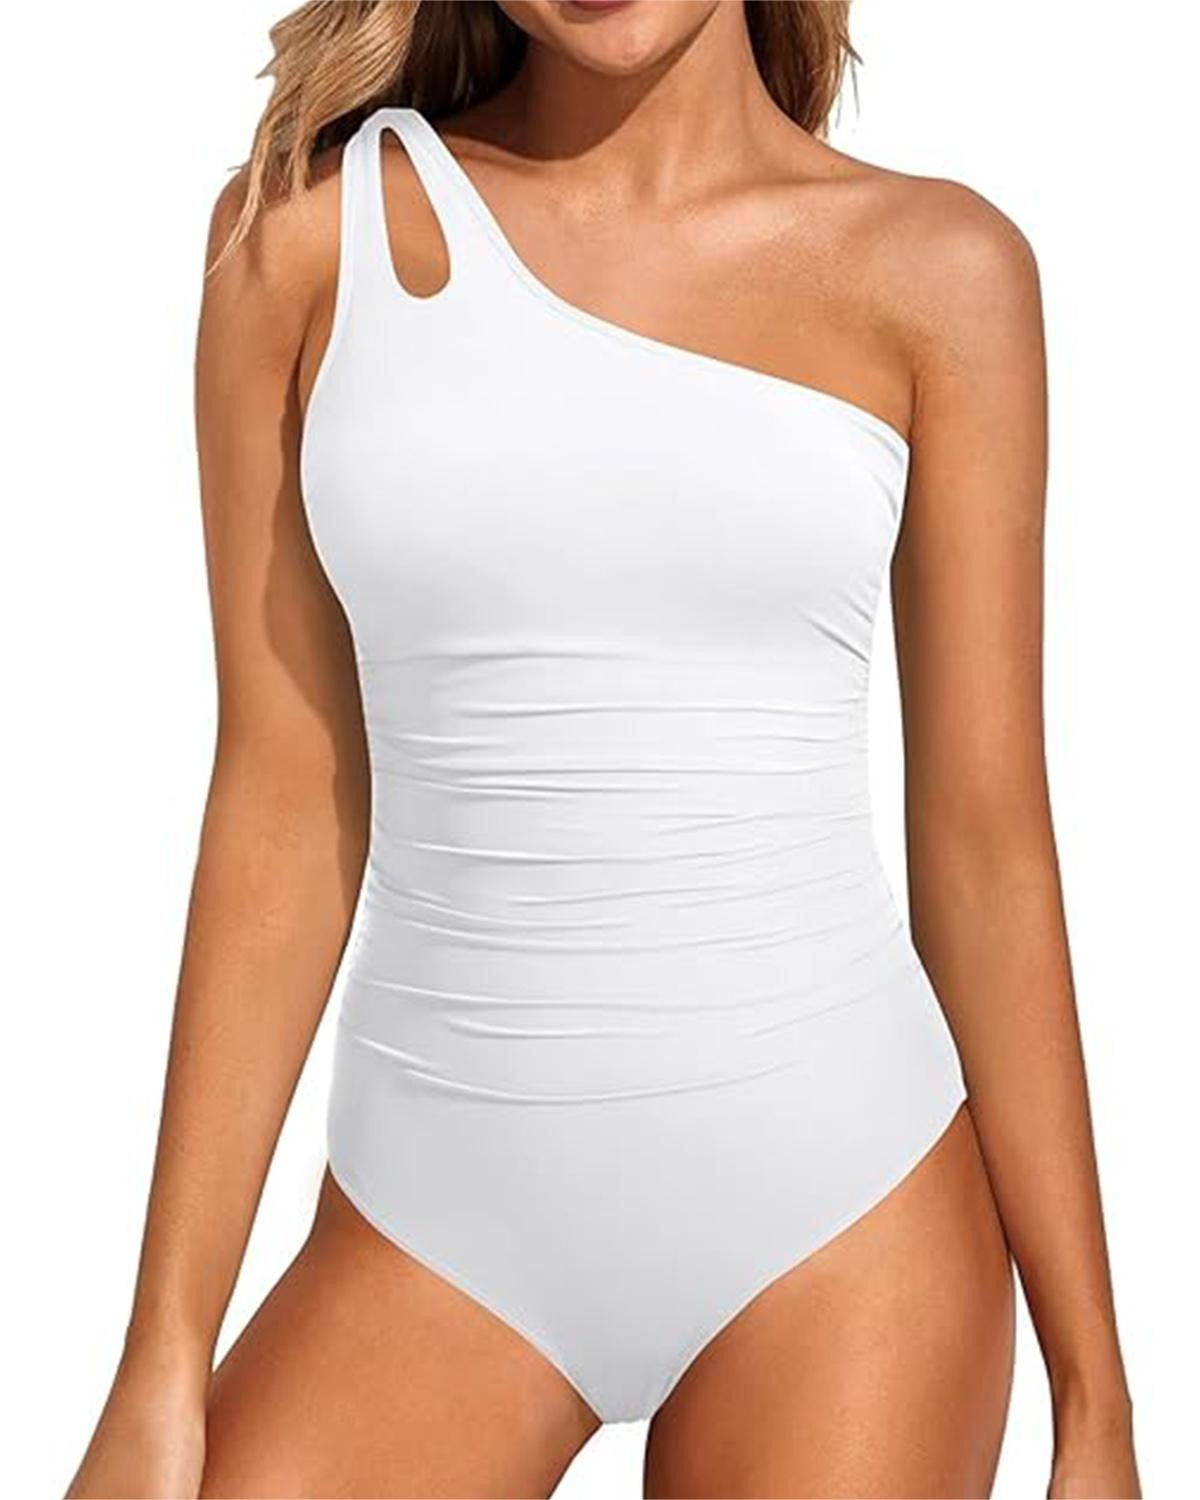 B.X Badekleid Damen one-Shoulder-Sexy einfarbig undichten Rücken Einteiler-Badeanzug Bauchkontrolle angemessen bedeckendes durchbrochenes Badeanzug